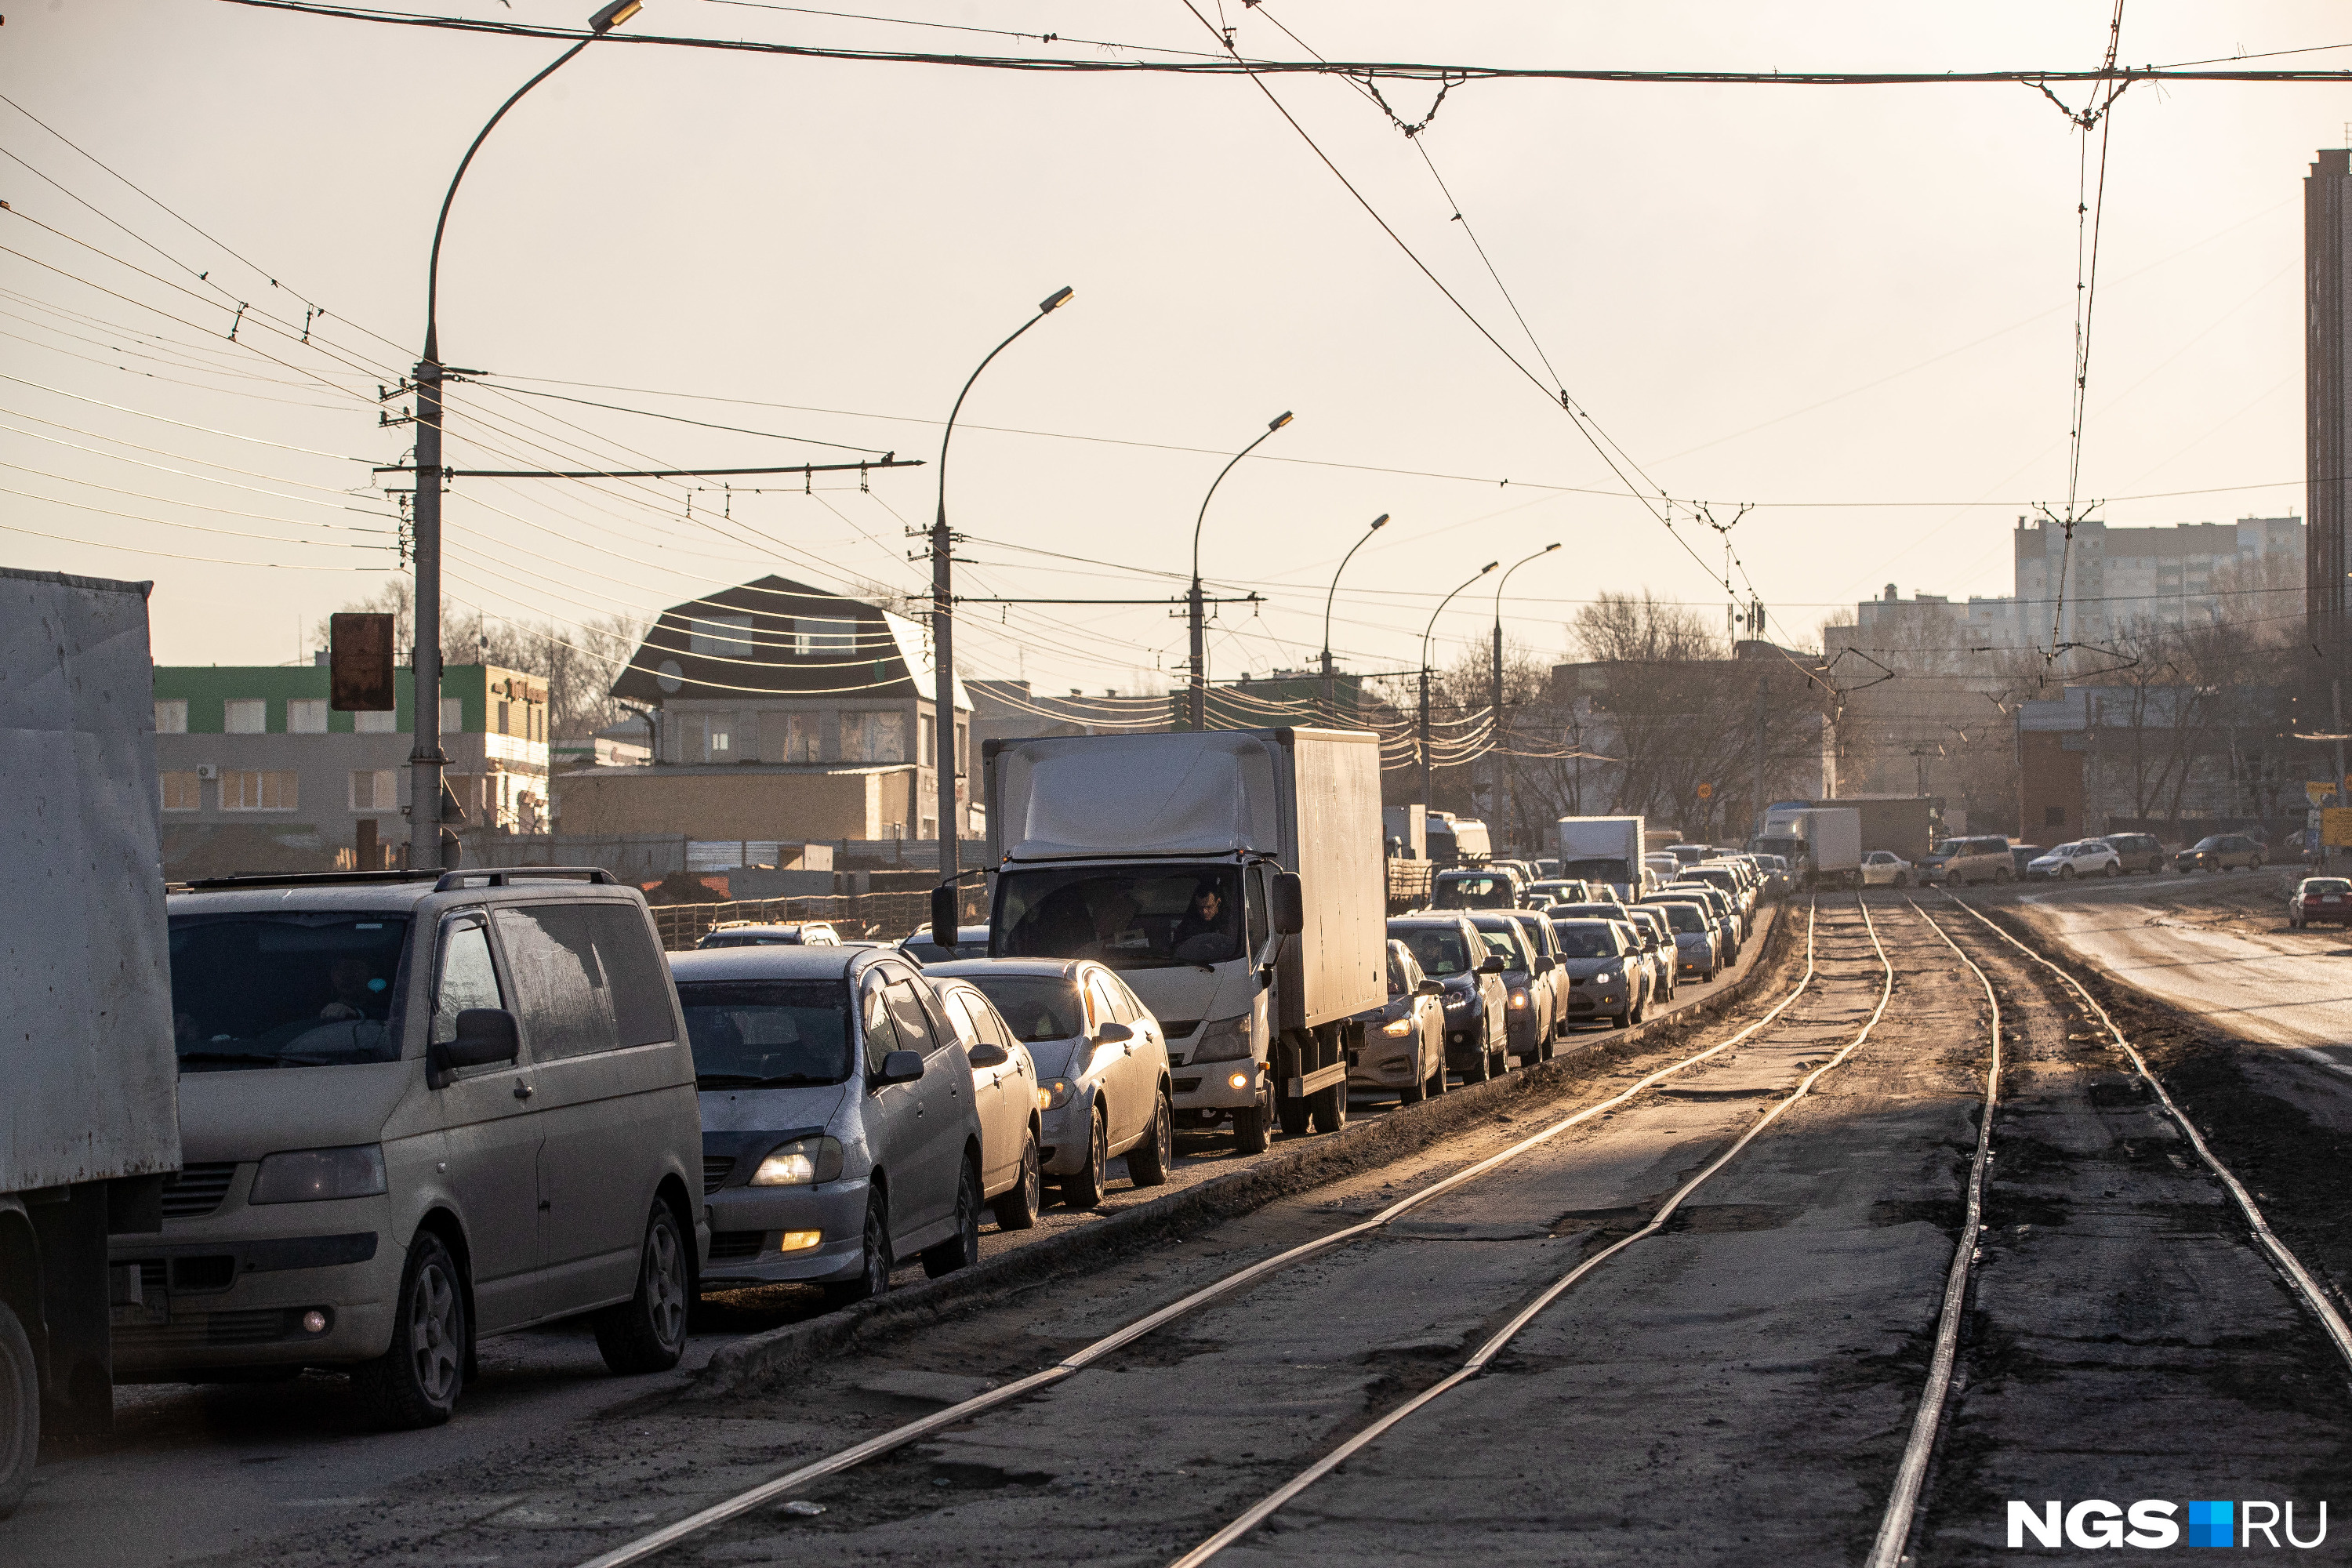 Мэрия Новосибирска составила 5-летний план по ремонту дорог. Смотрим, что сделают и за сколько